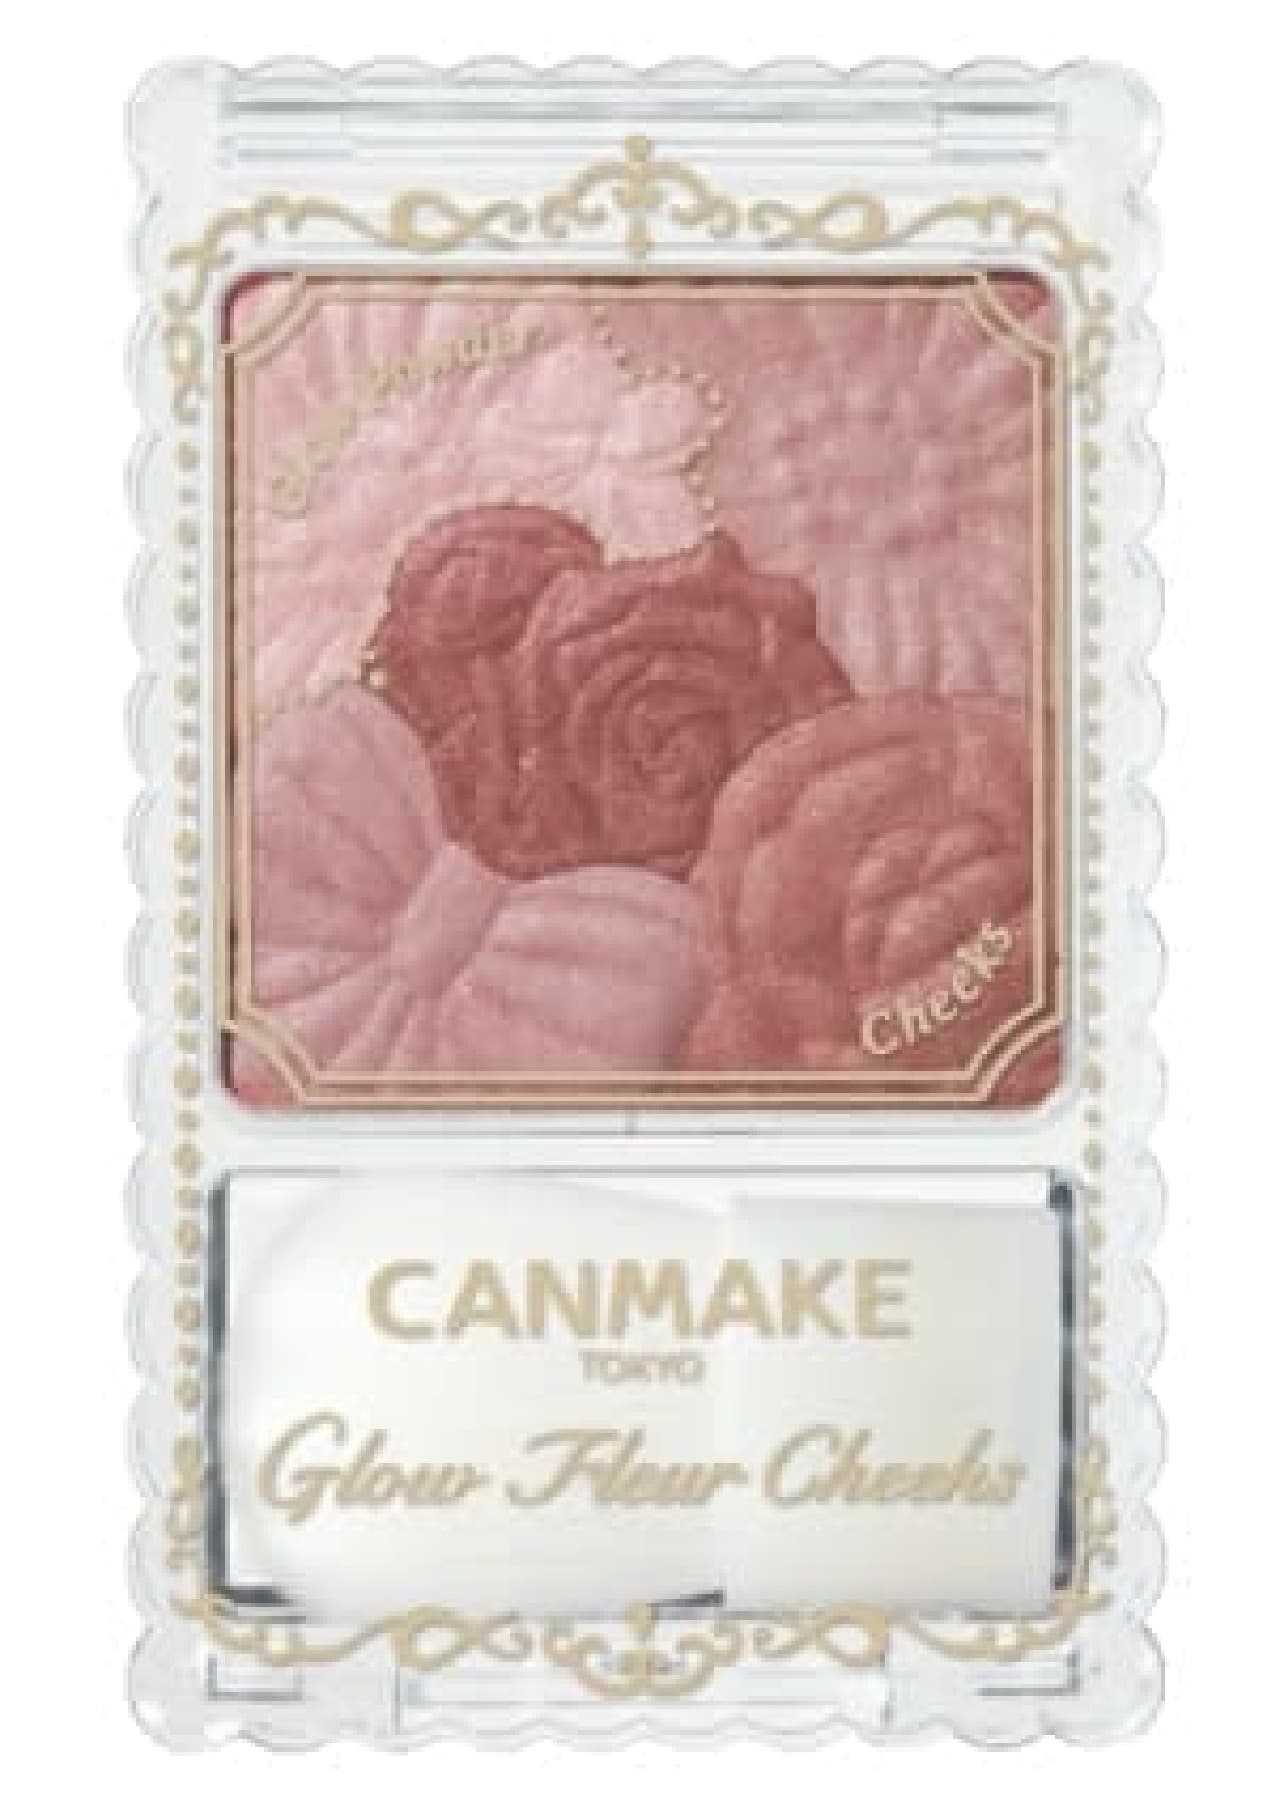 Canmake "Glow Fleur Cheeks"